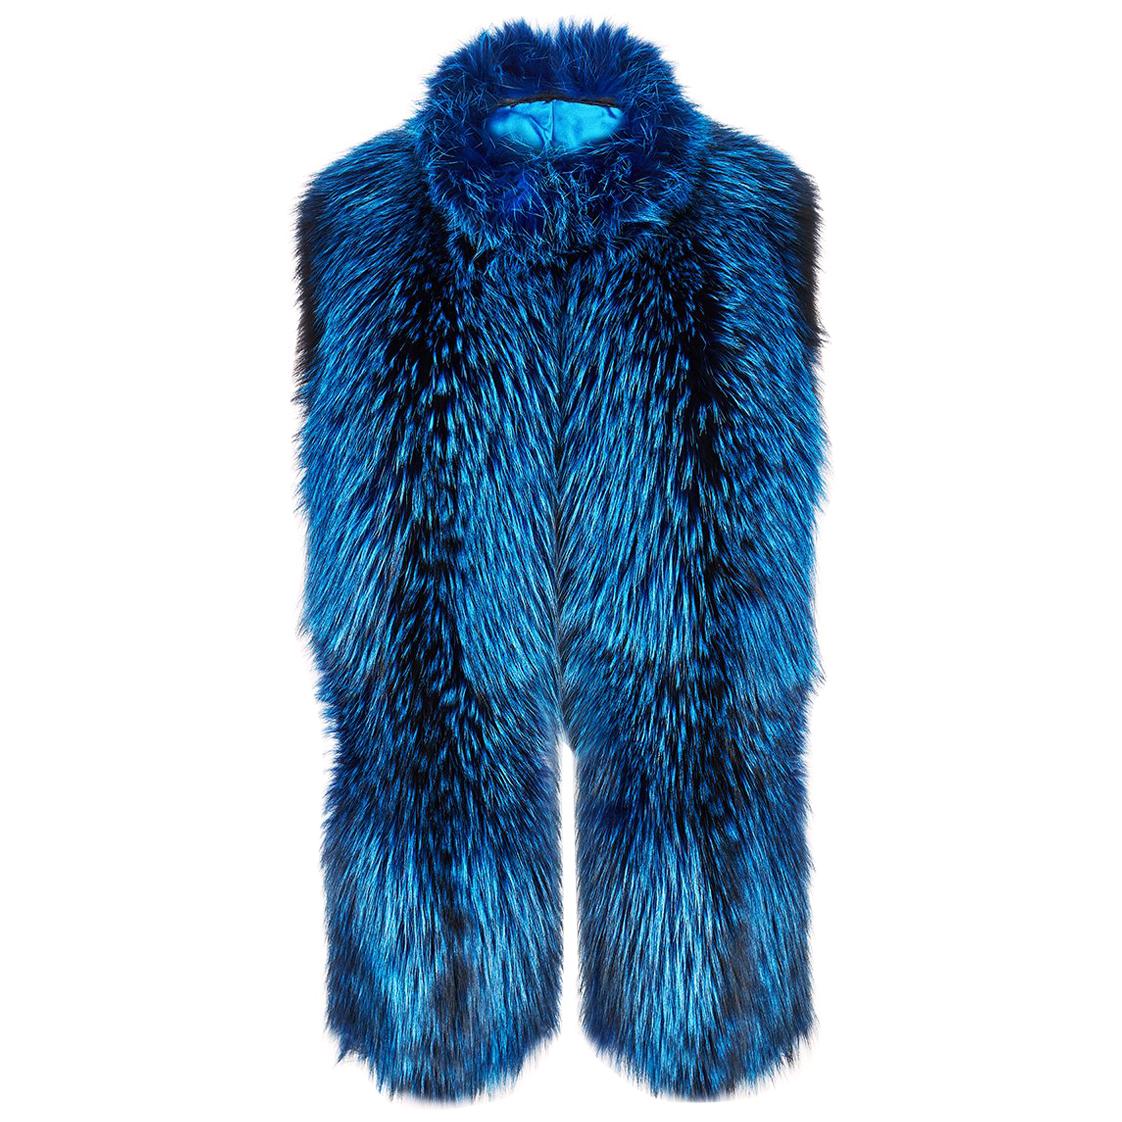 Verheyen London Nehru Collar Stole  in Lapis Blue Fox Fur - Brand New 